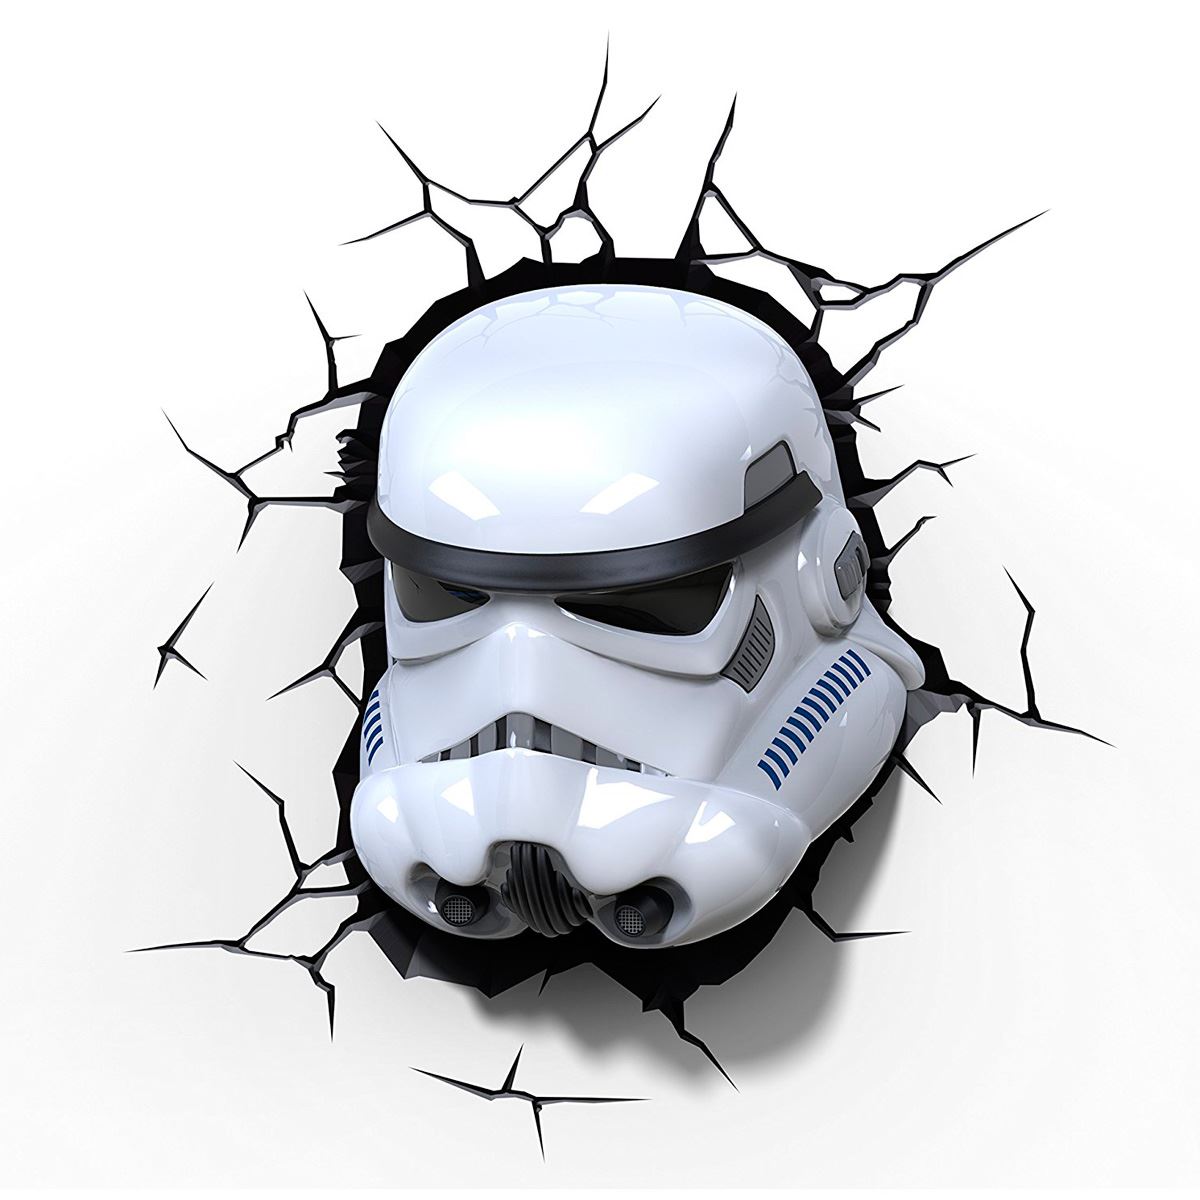 L&#225;mpara 3D  star wars storm trooper